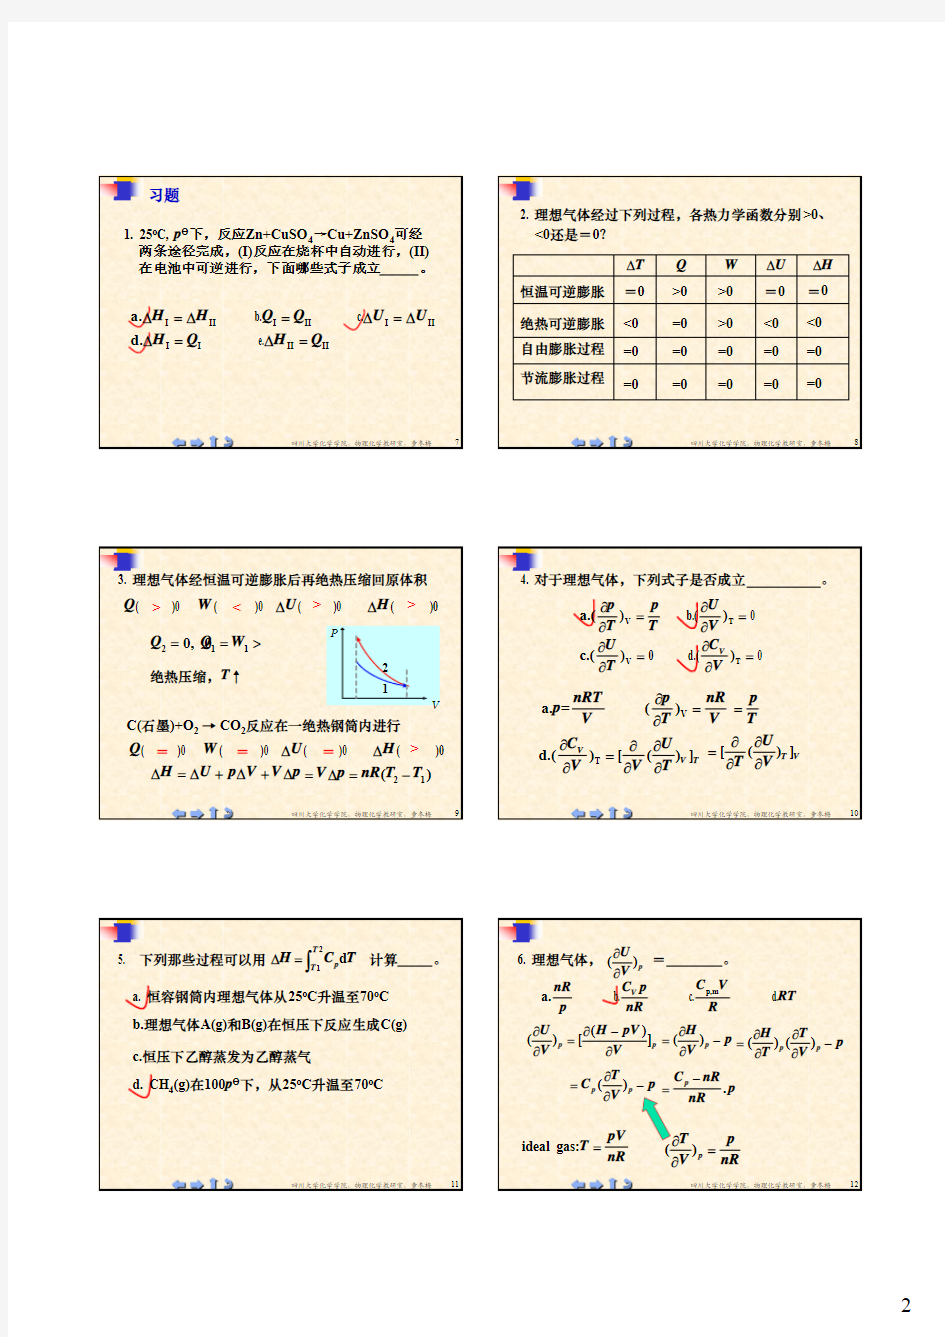 四川大学物理化学习题1.第一章习题